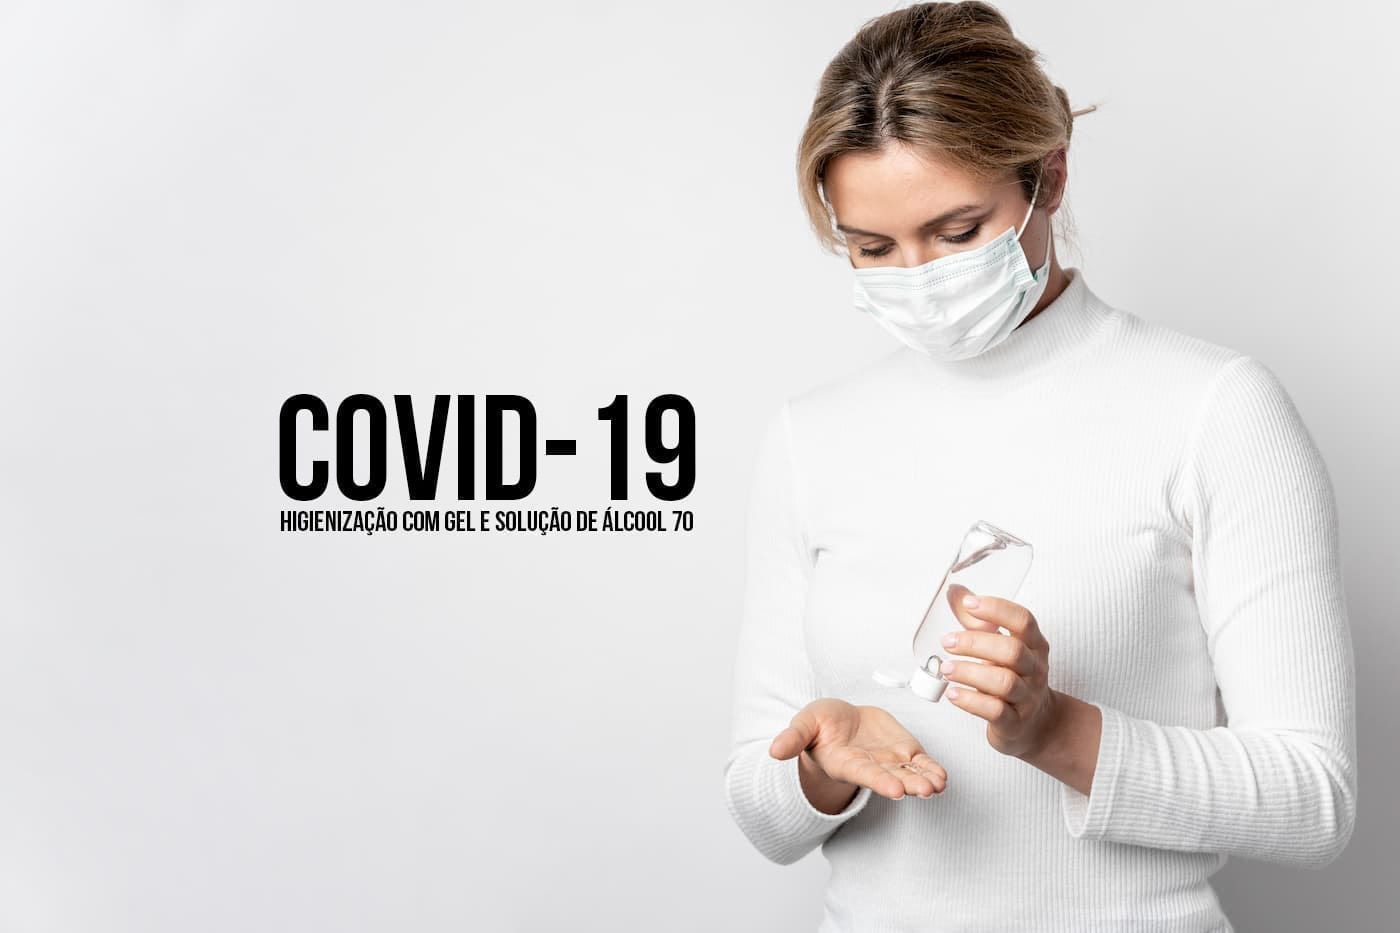 COVID-19: Setor sucroenergético doa álcool à rede pública de saúde para a fabricação de gel